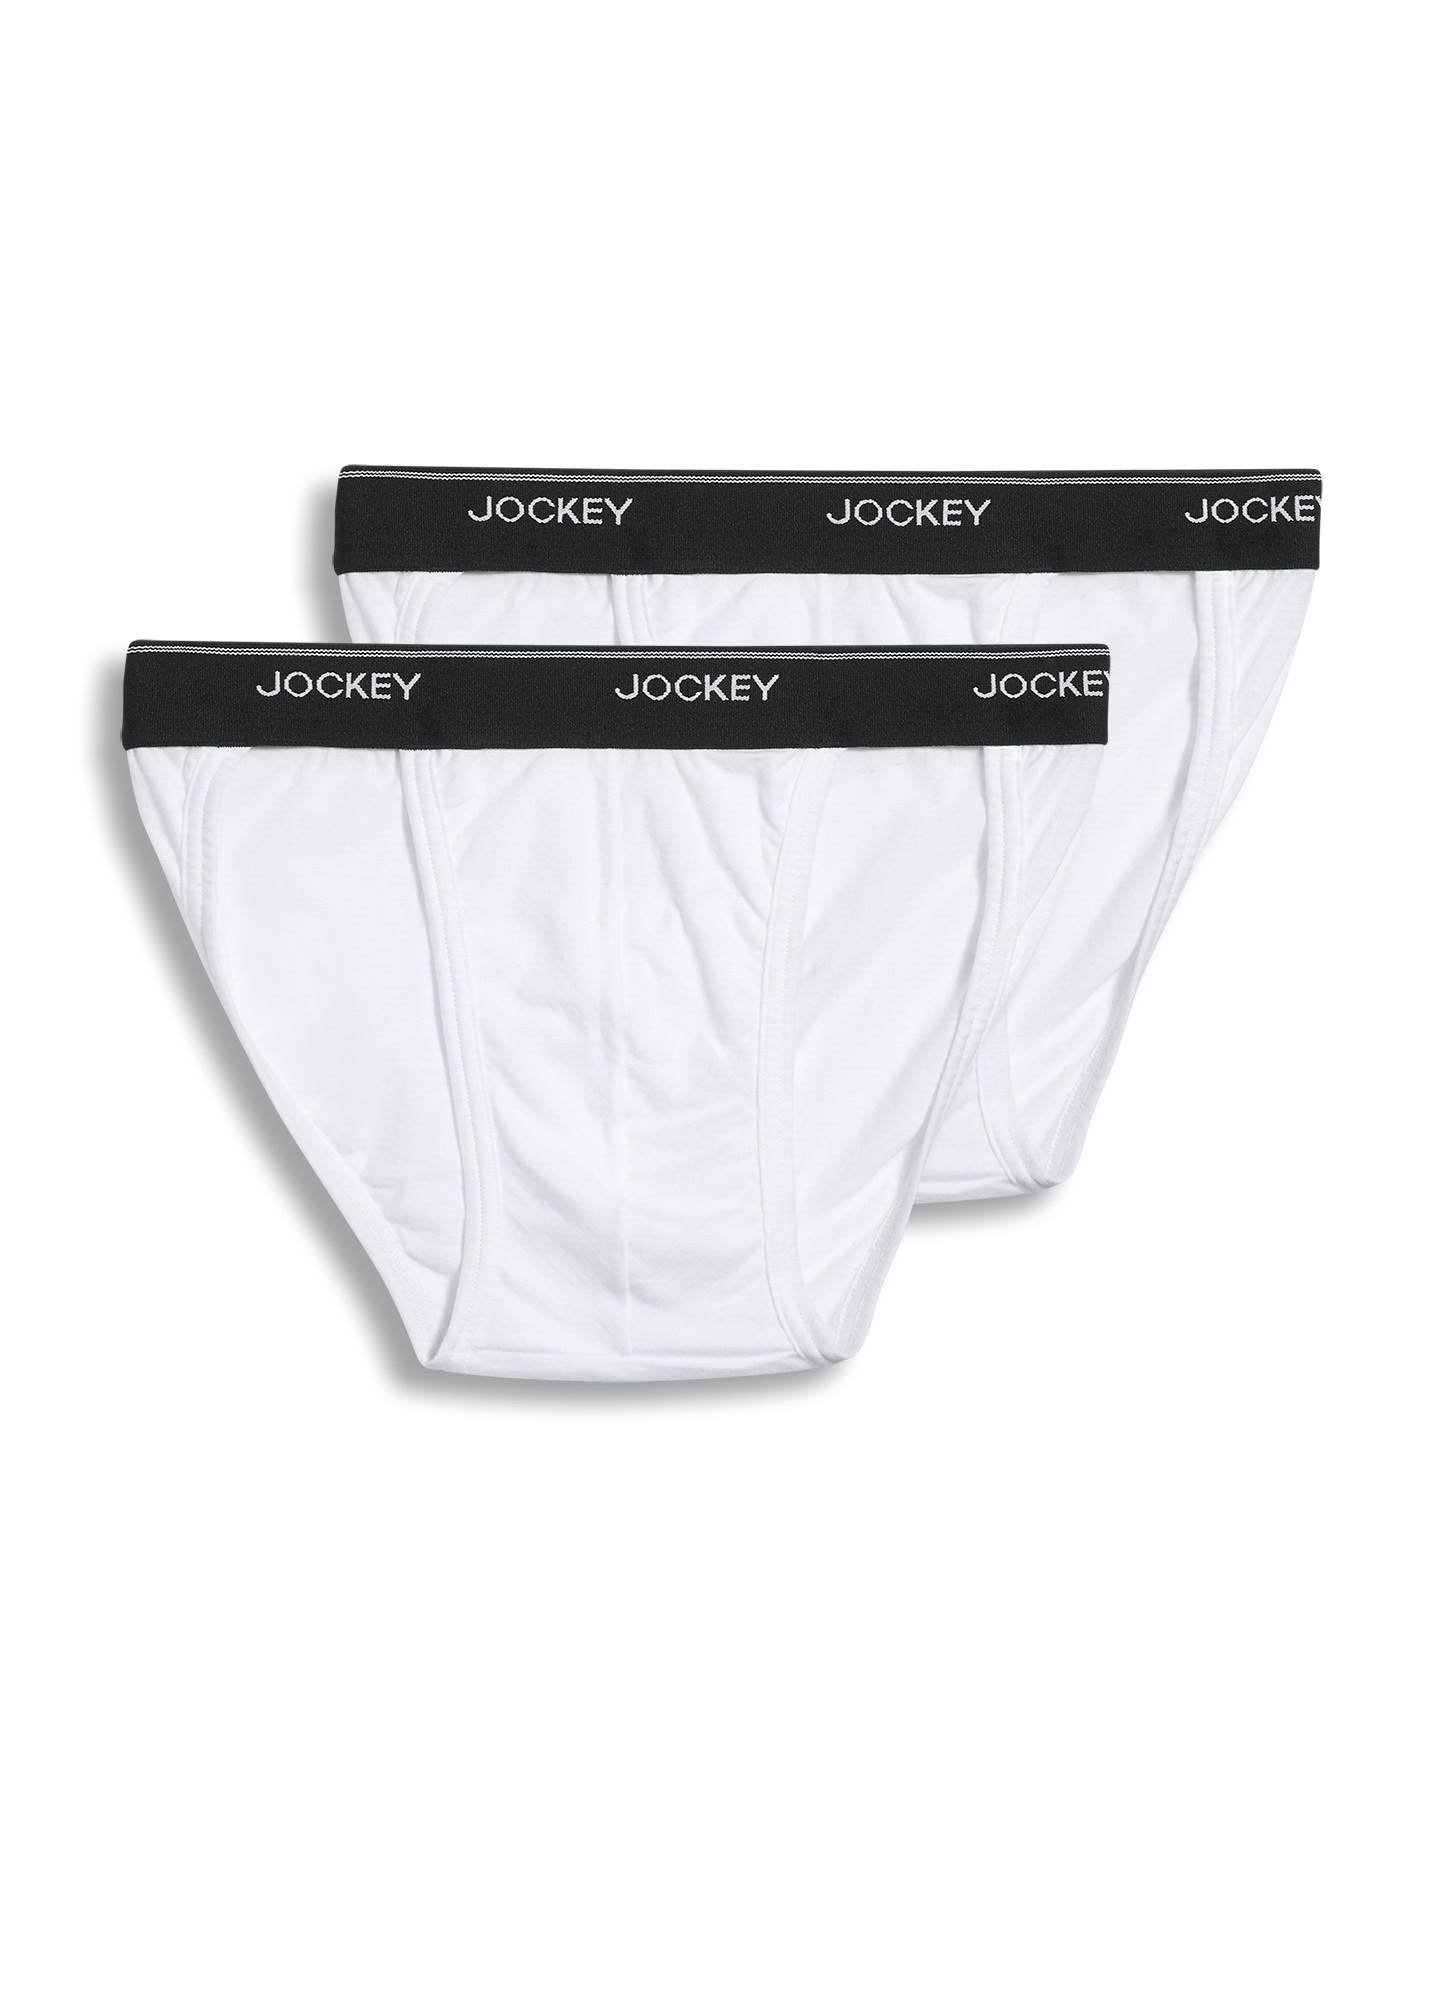 Jockey Elance Mens XL 40-42 String Bikini White 100 Cotton Style 1005 Low  Rise for sale online